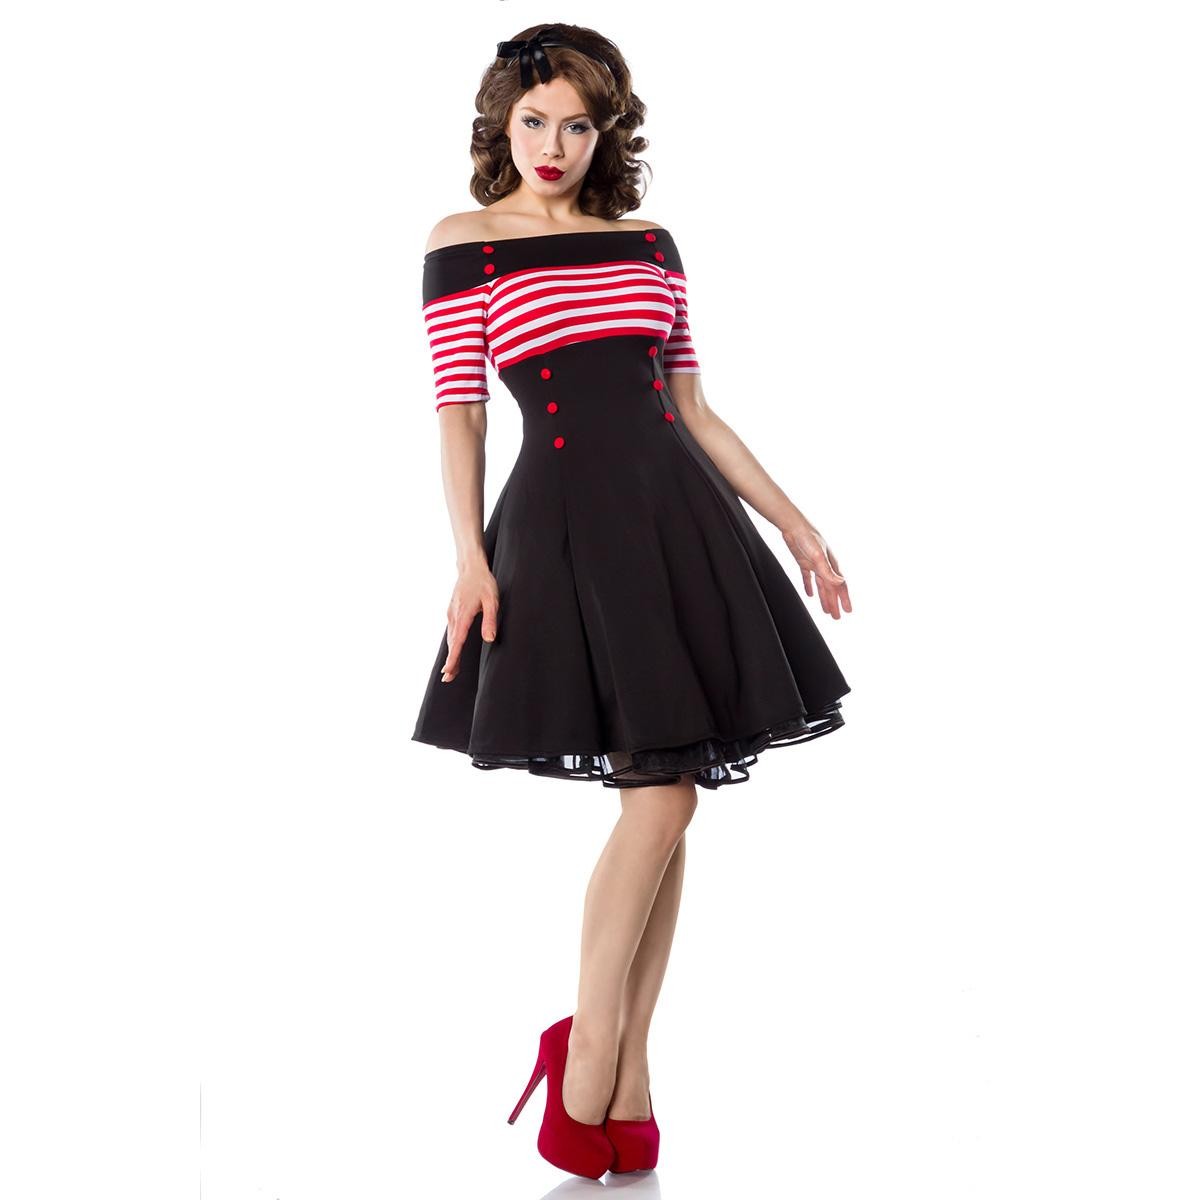  Belsira  -  Vintage-Kleid  -  schwarz/rot/weiß 